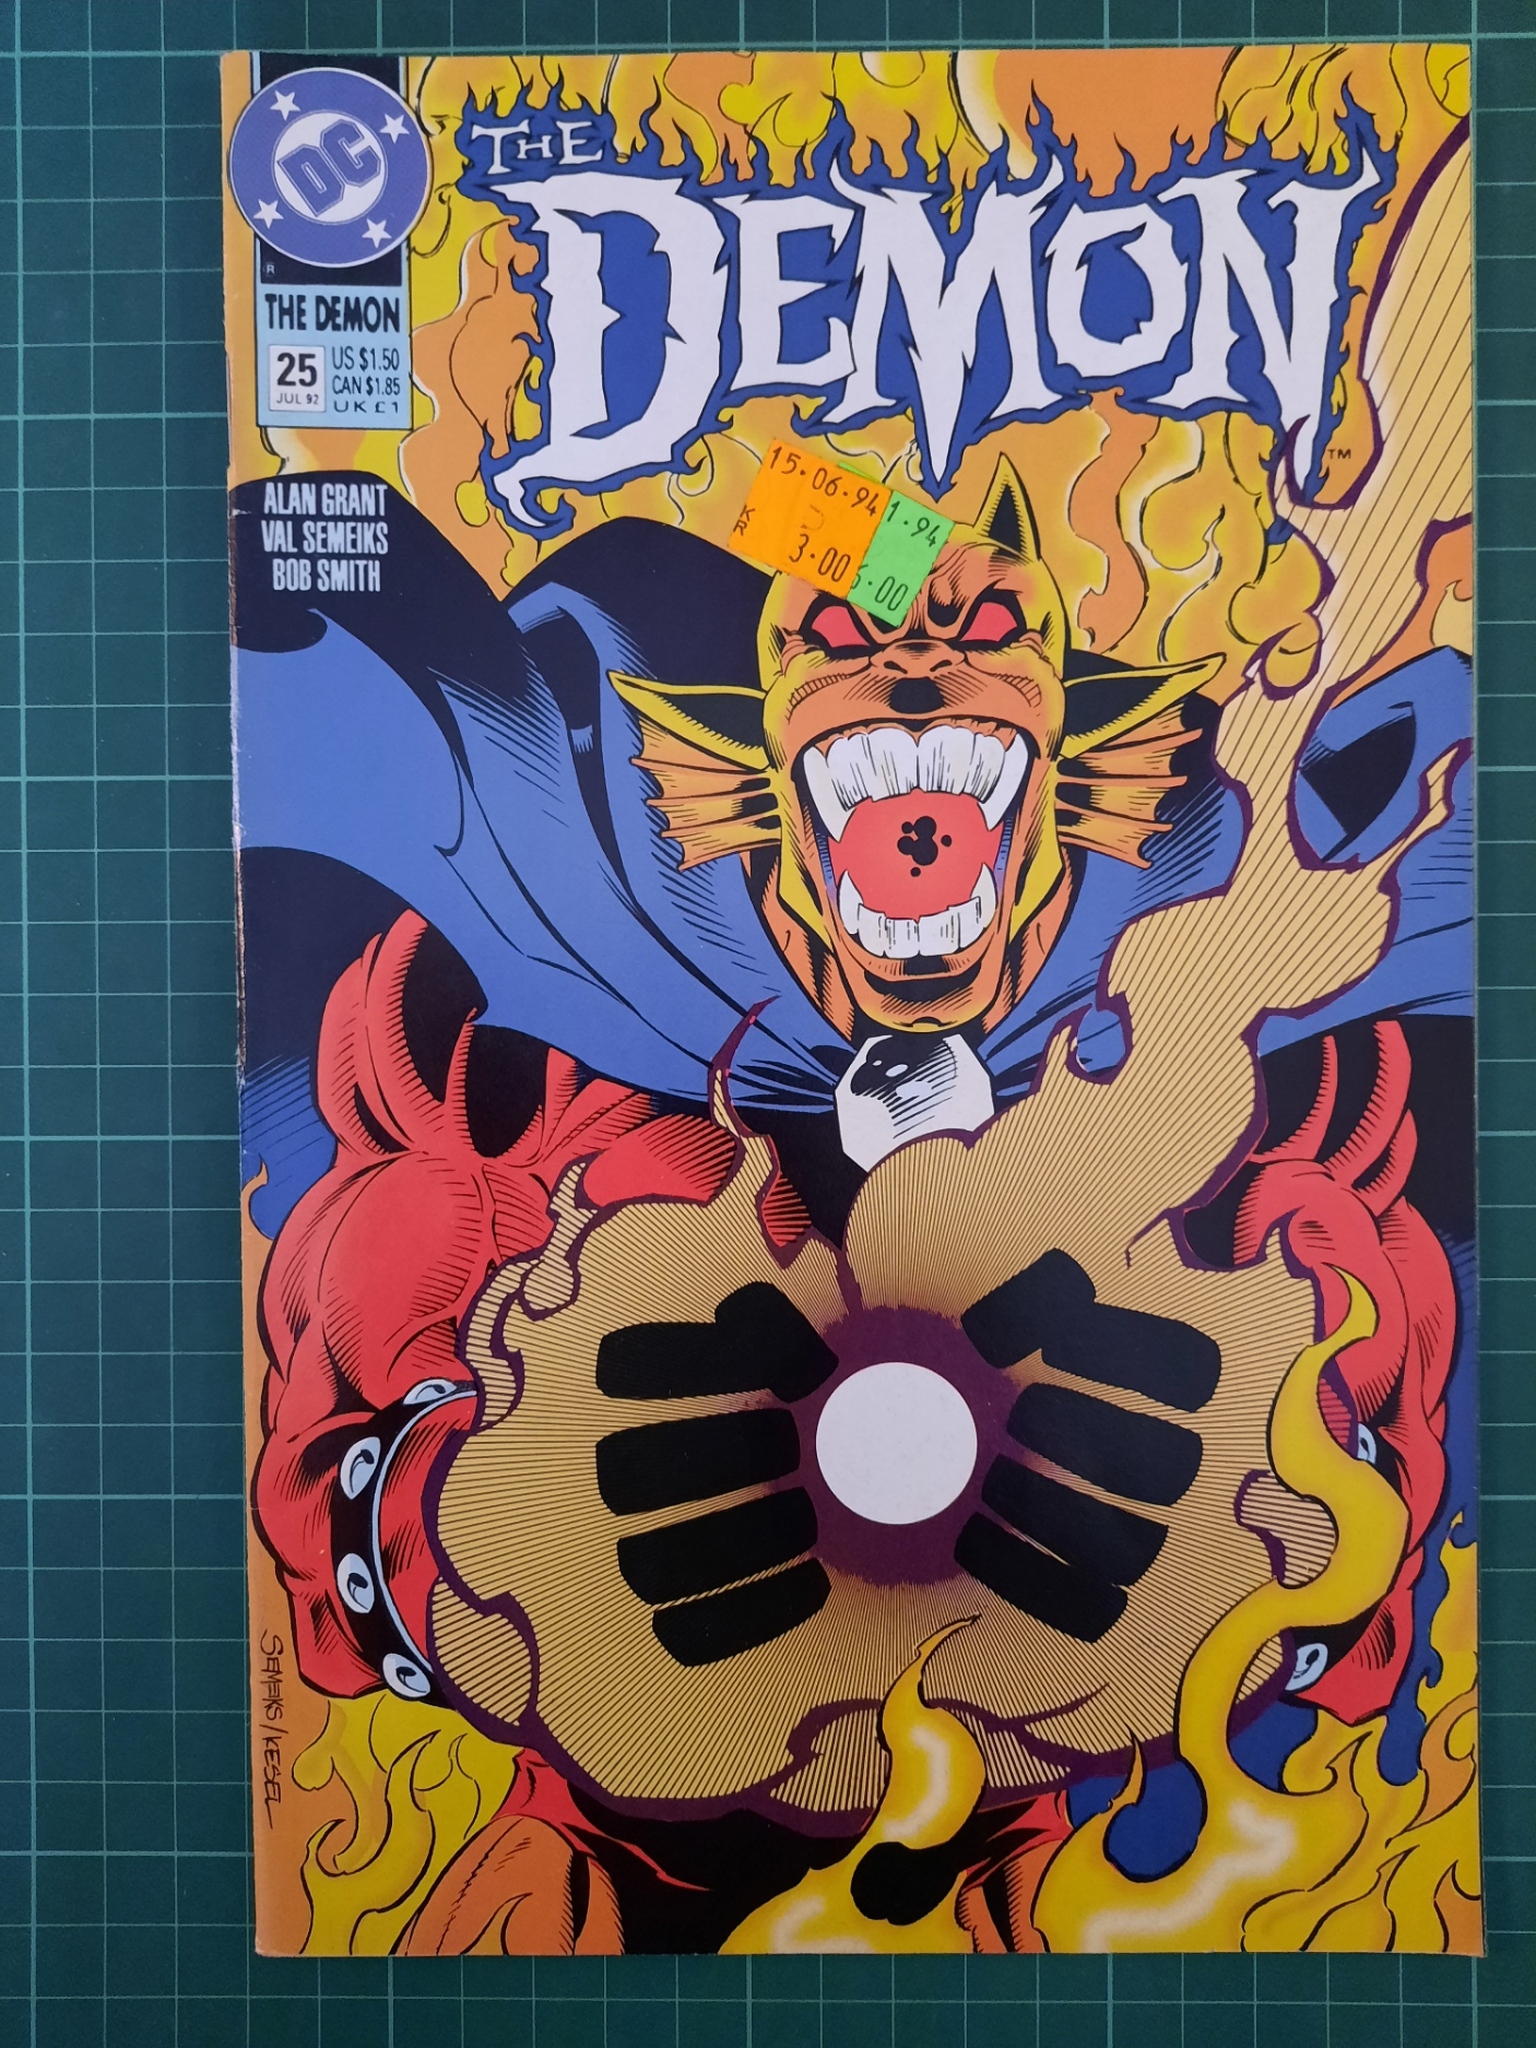 The Demon #25